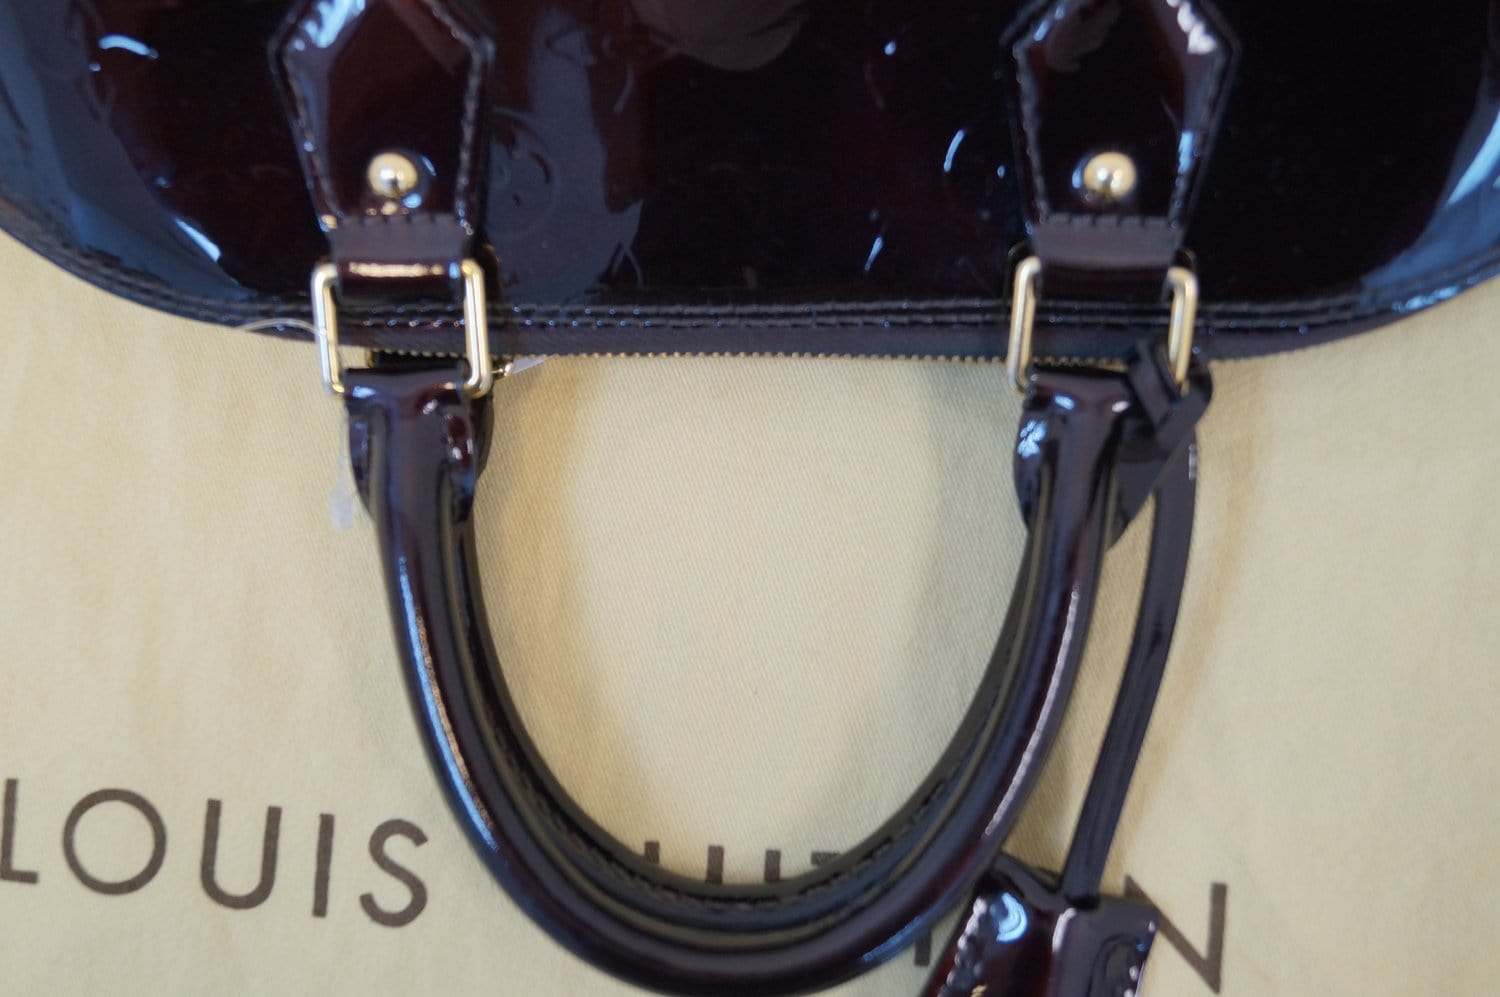 Authentic Louis Vuitton Amarante Monogram Vernis Alma PM Bag